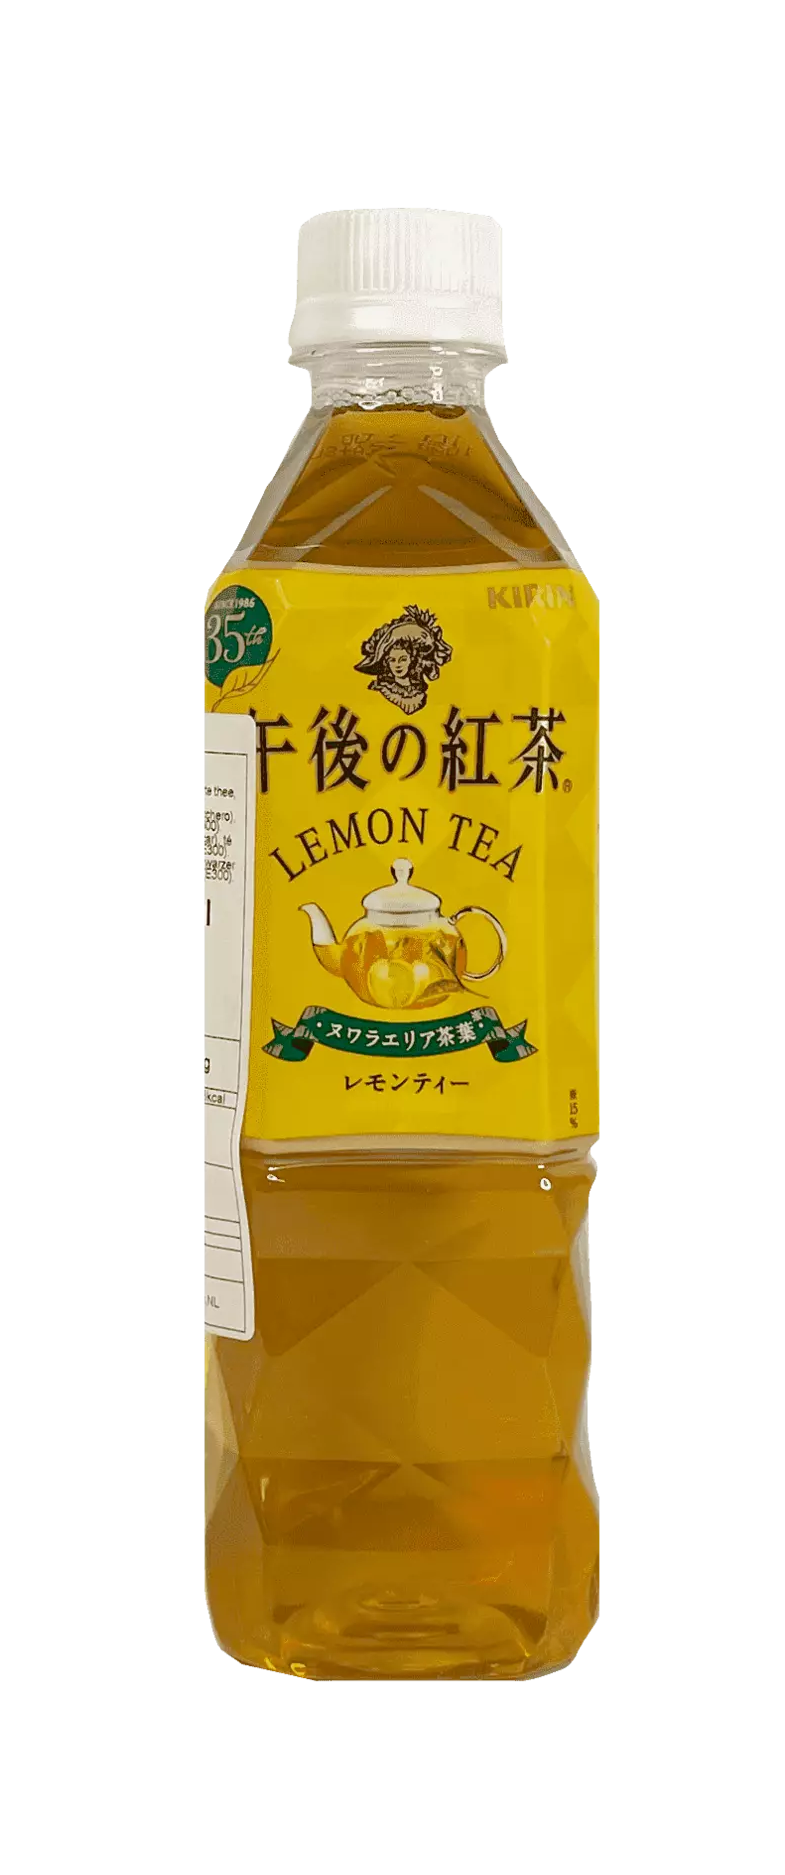 午后的红茶 柠檬味 500 毫升 Kirin 日本